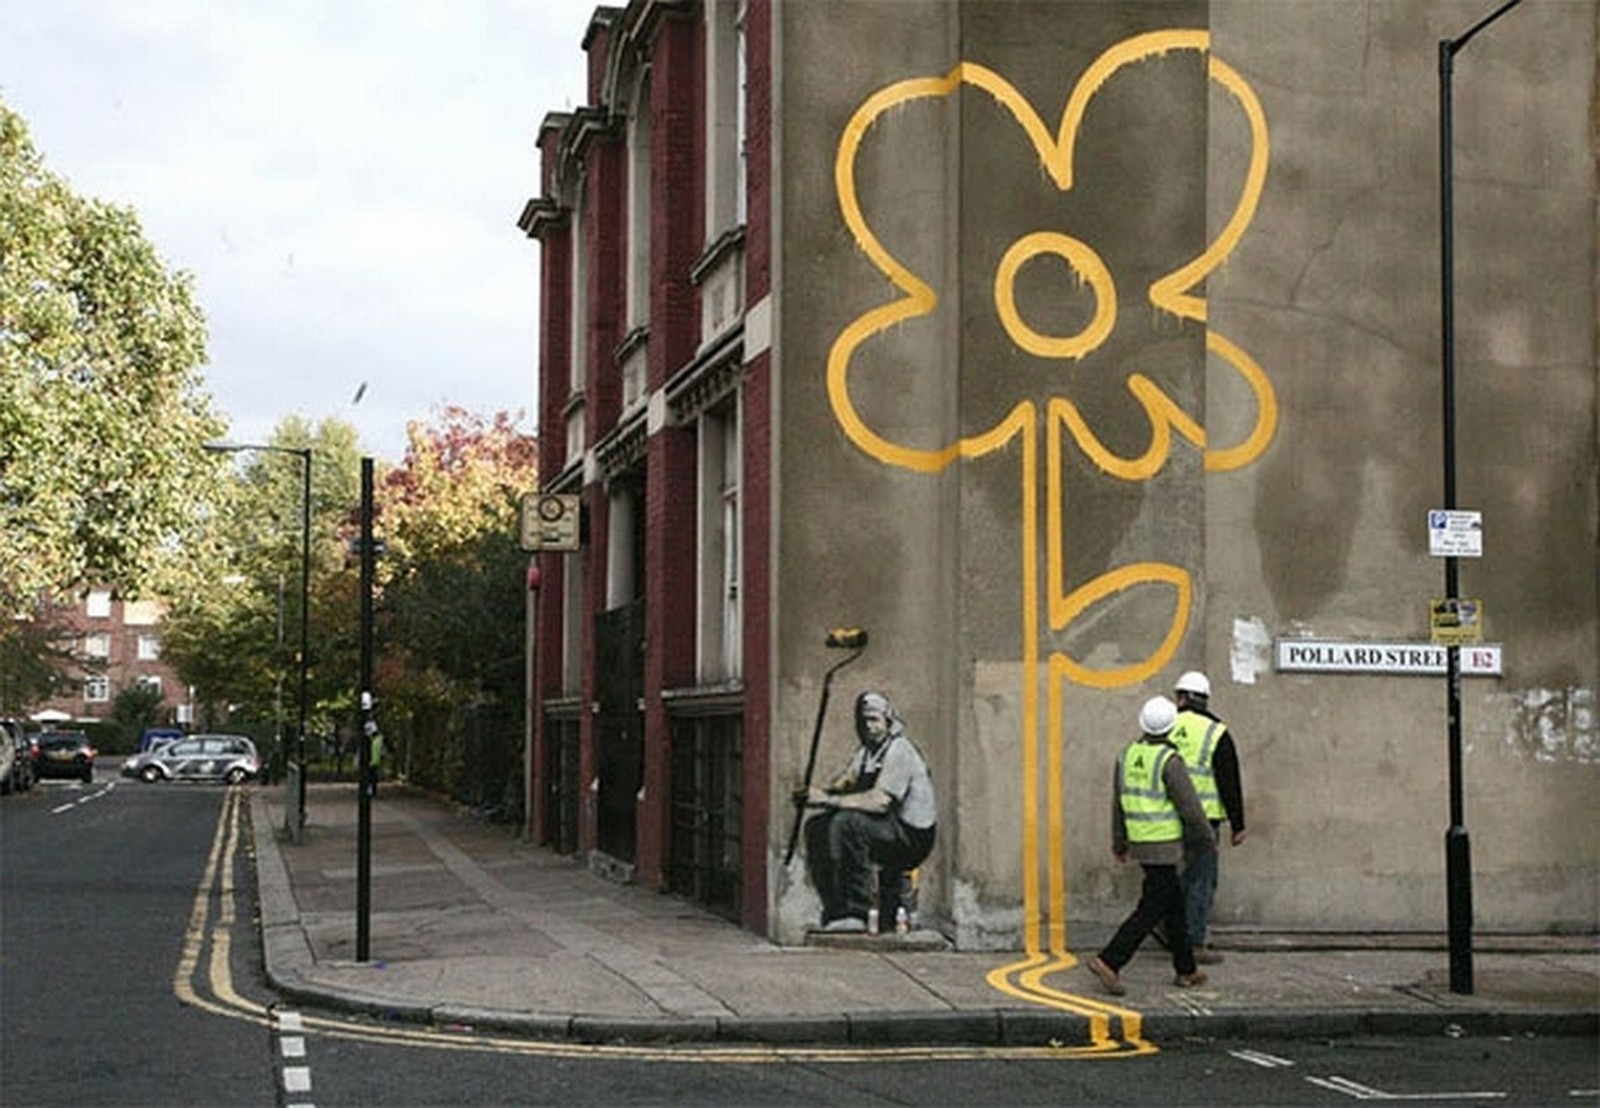 Бэнкси  Двойная сплошная. 2007  Граффити  Тауэр-Хамлетс, Лондон